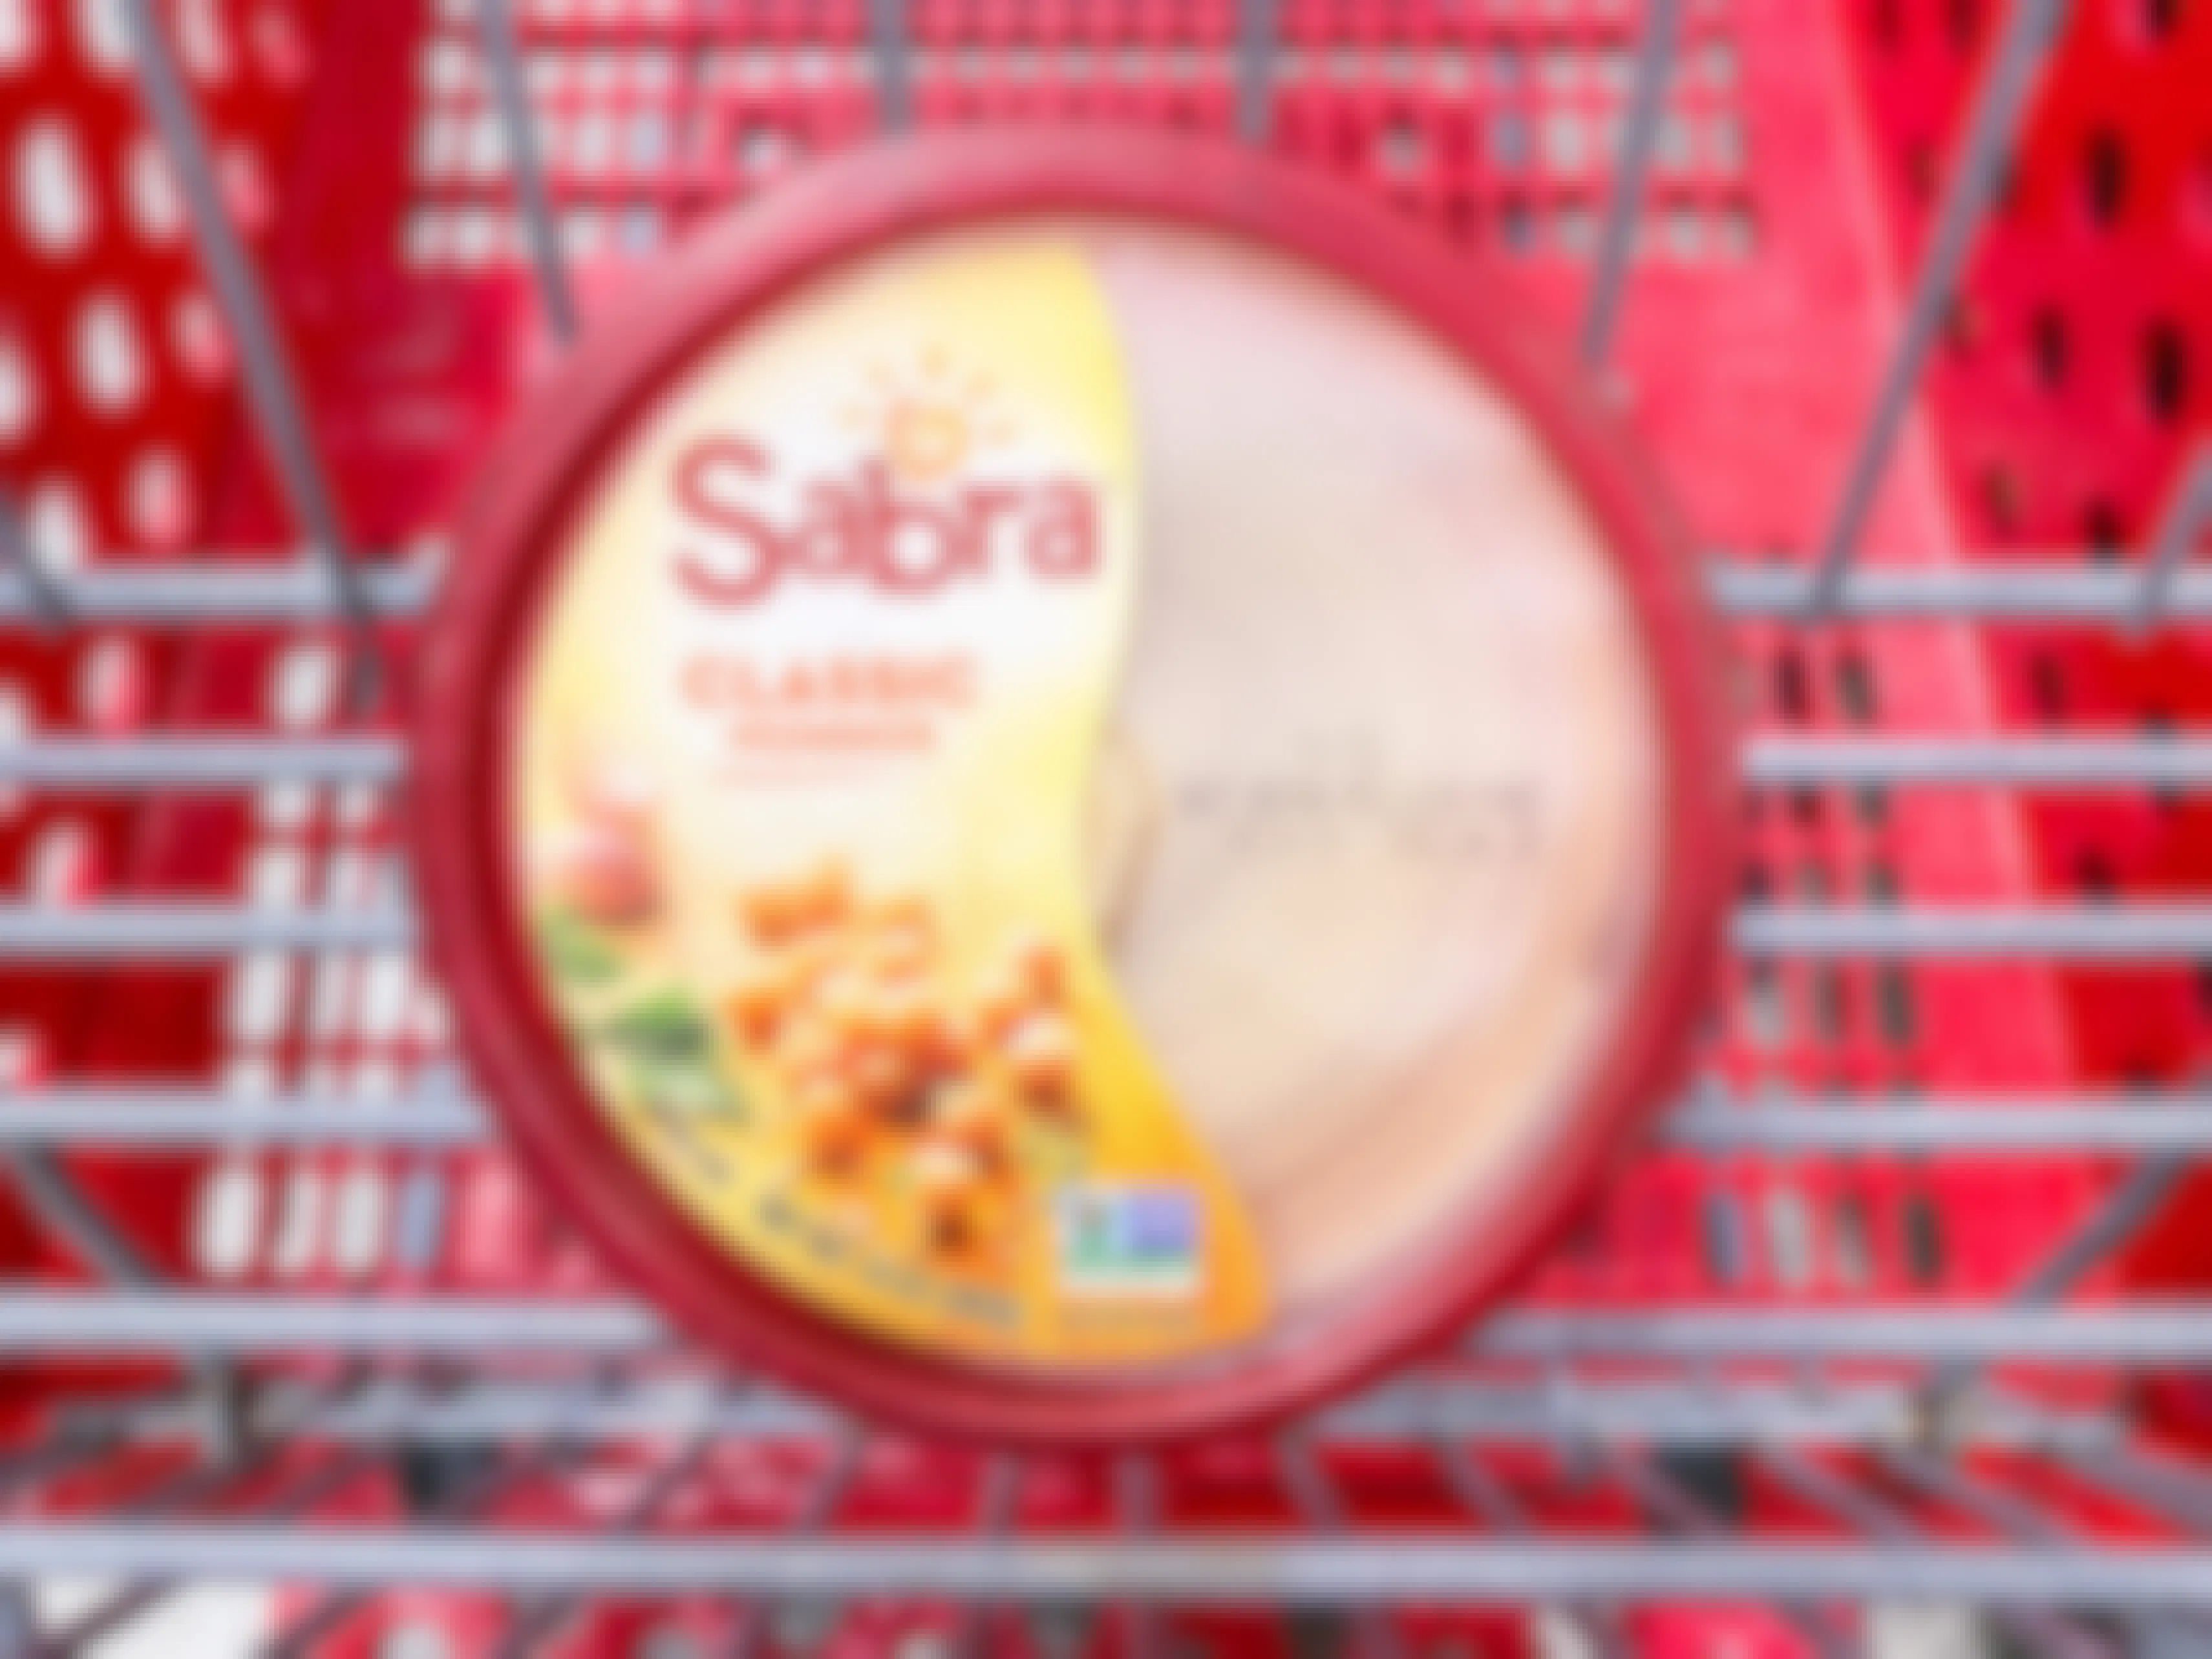 Sabra Classic Hummus in Target shopping cart